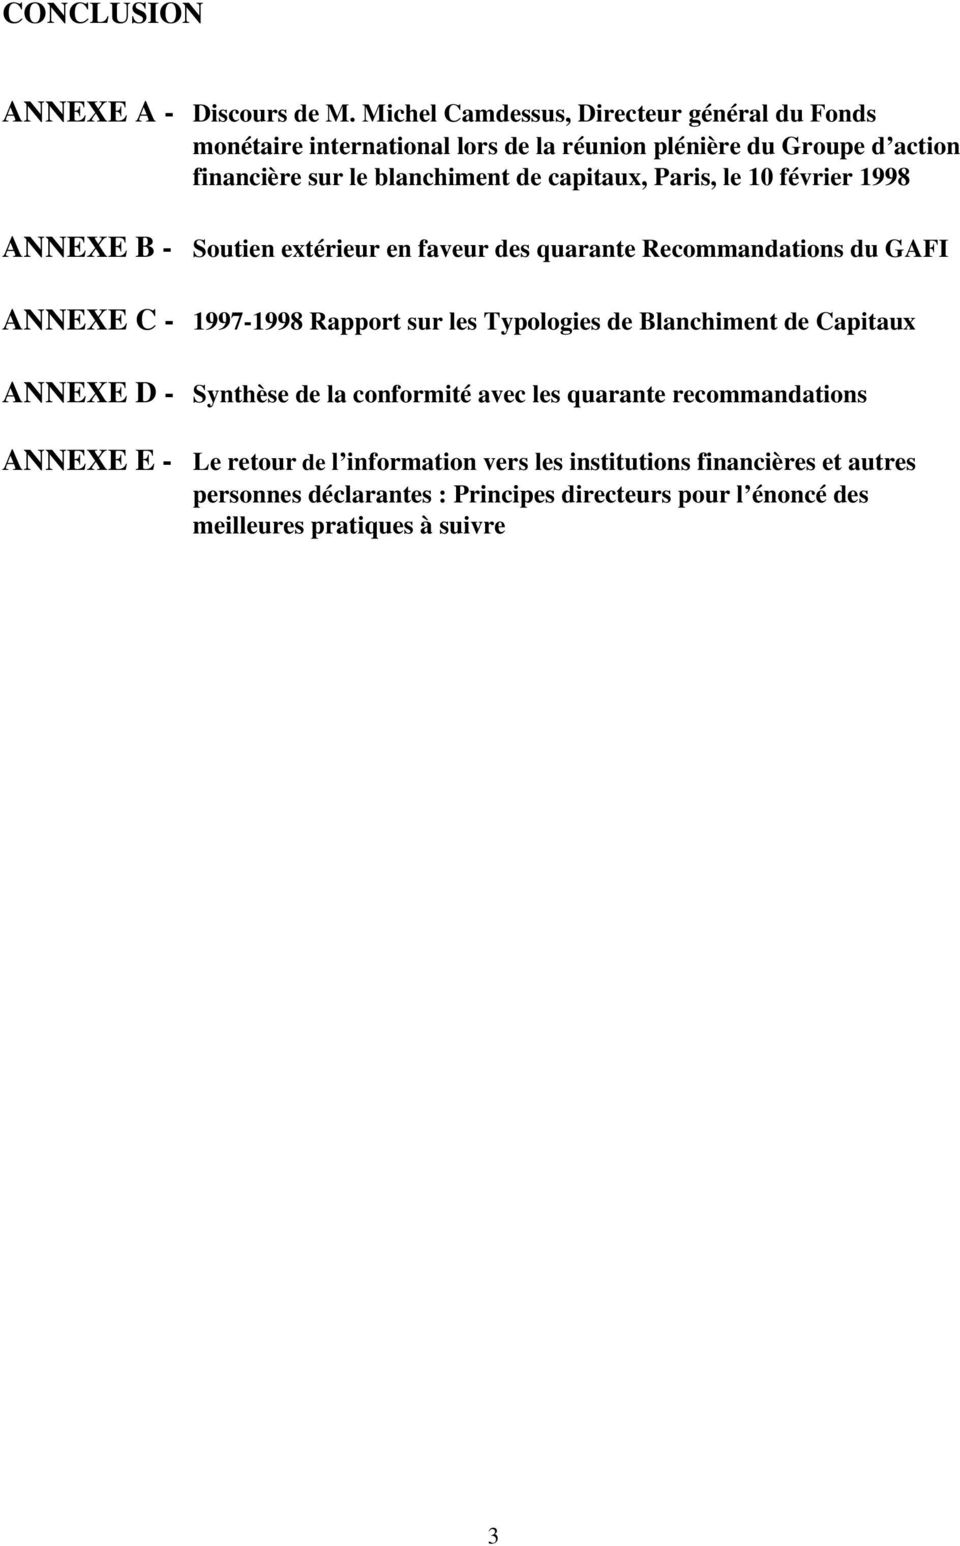 capitaux, Paris, le 10 février 1998 ANNEXE B - Soutien extérieur en faveur des quarante Recommandations du GAFI ANNEXE C - 1997-1998 Rapport sur les